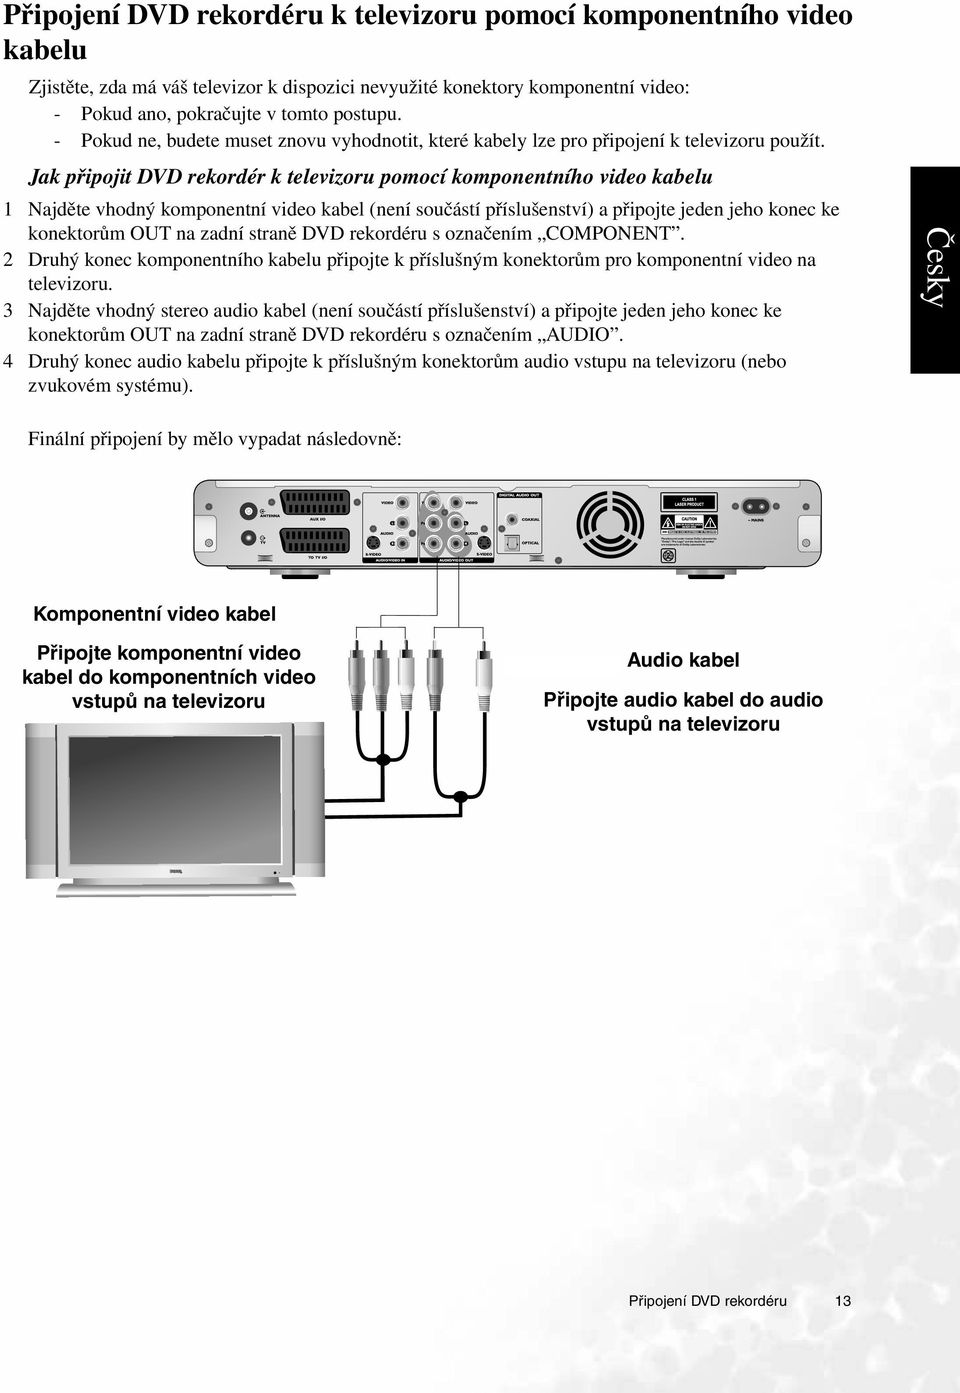 Jak připojit DVD rekordér k televizoru pomocí komponentního video kabelu 1 Najděte vhodný komponentní video kabel (není součástí příslušenství) a připojte jeden jeho konec ke konektorům OUT na zadní